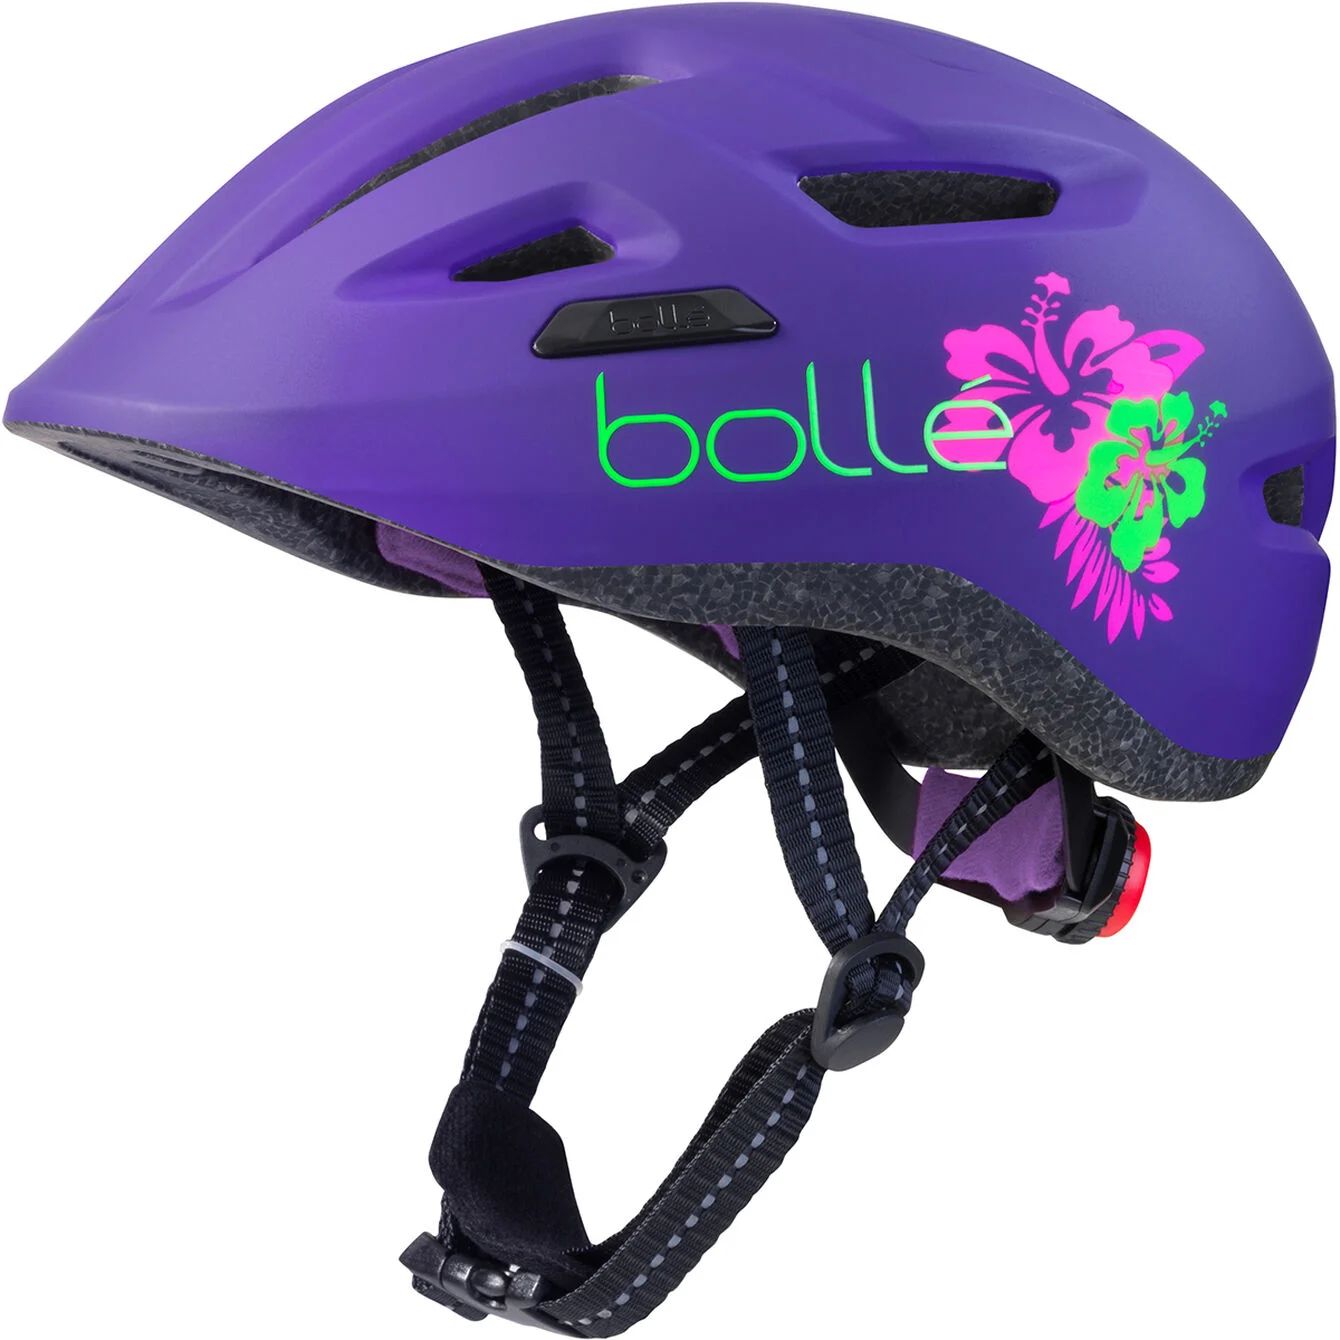 Bollé Casque De Vélo Enfant Stance Junior - Violet/Vert